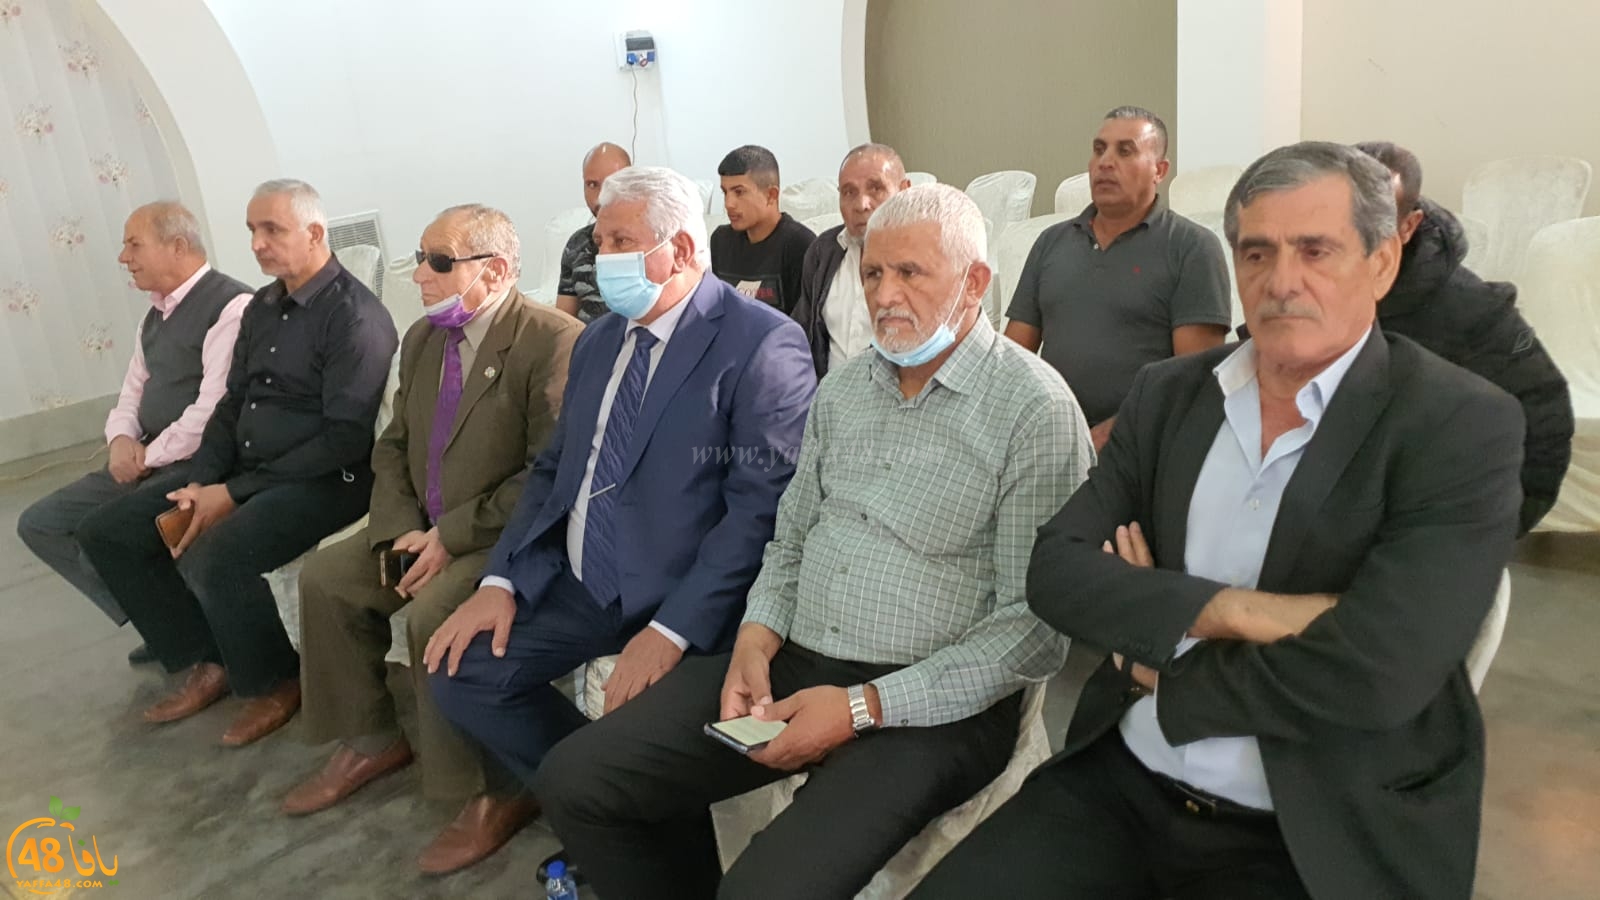  فيديو: عقد راية الصلح بين ابناء عائلة الحاج في قرية كابول